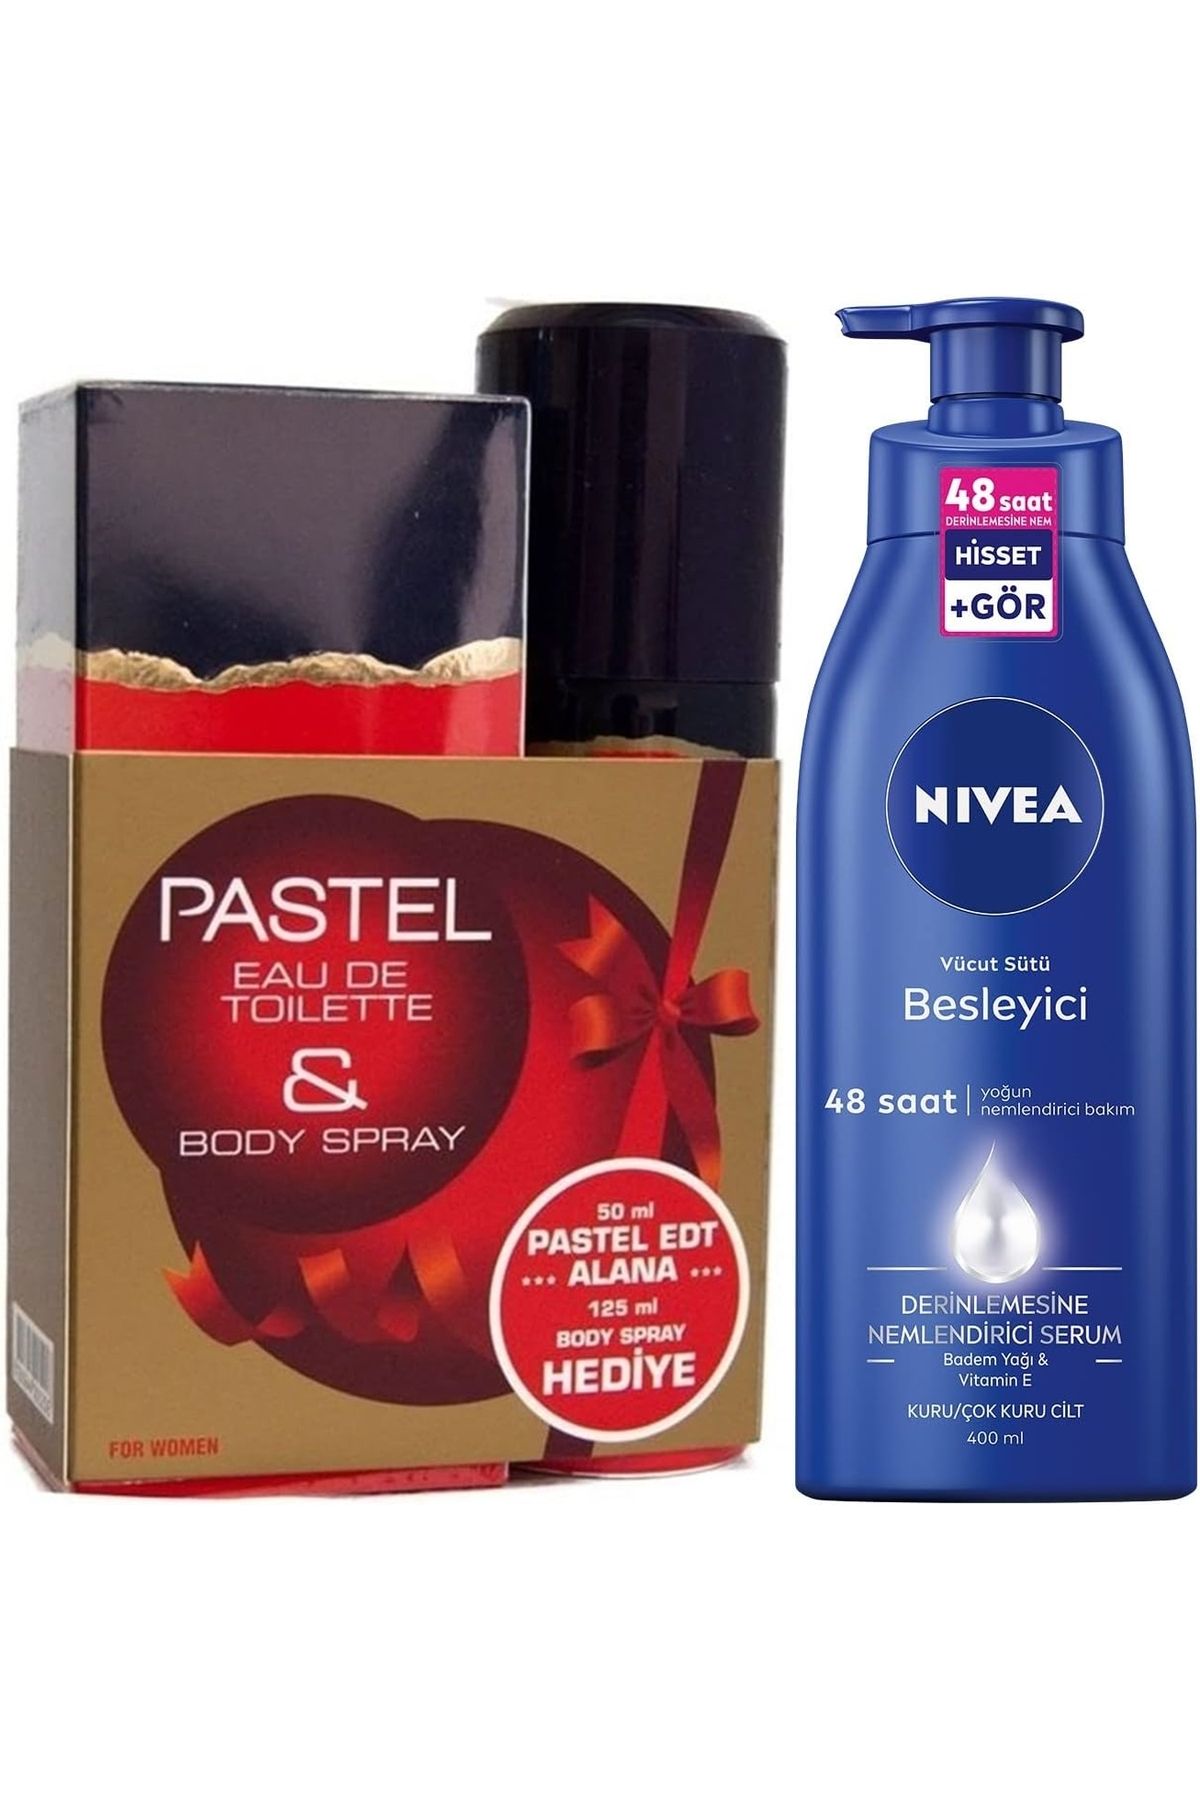 NIVEA Pastel Kadın Parfüm Edt 50 Ml+125 Ml Deodorant Seti + NIVEA Besleyici Vücut Sütü 400 ml